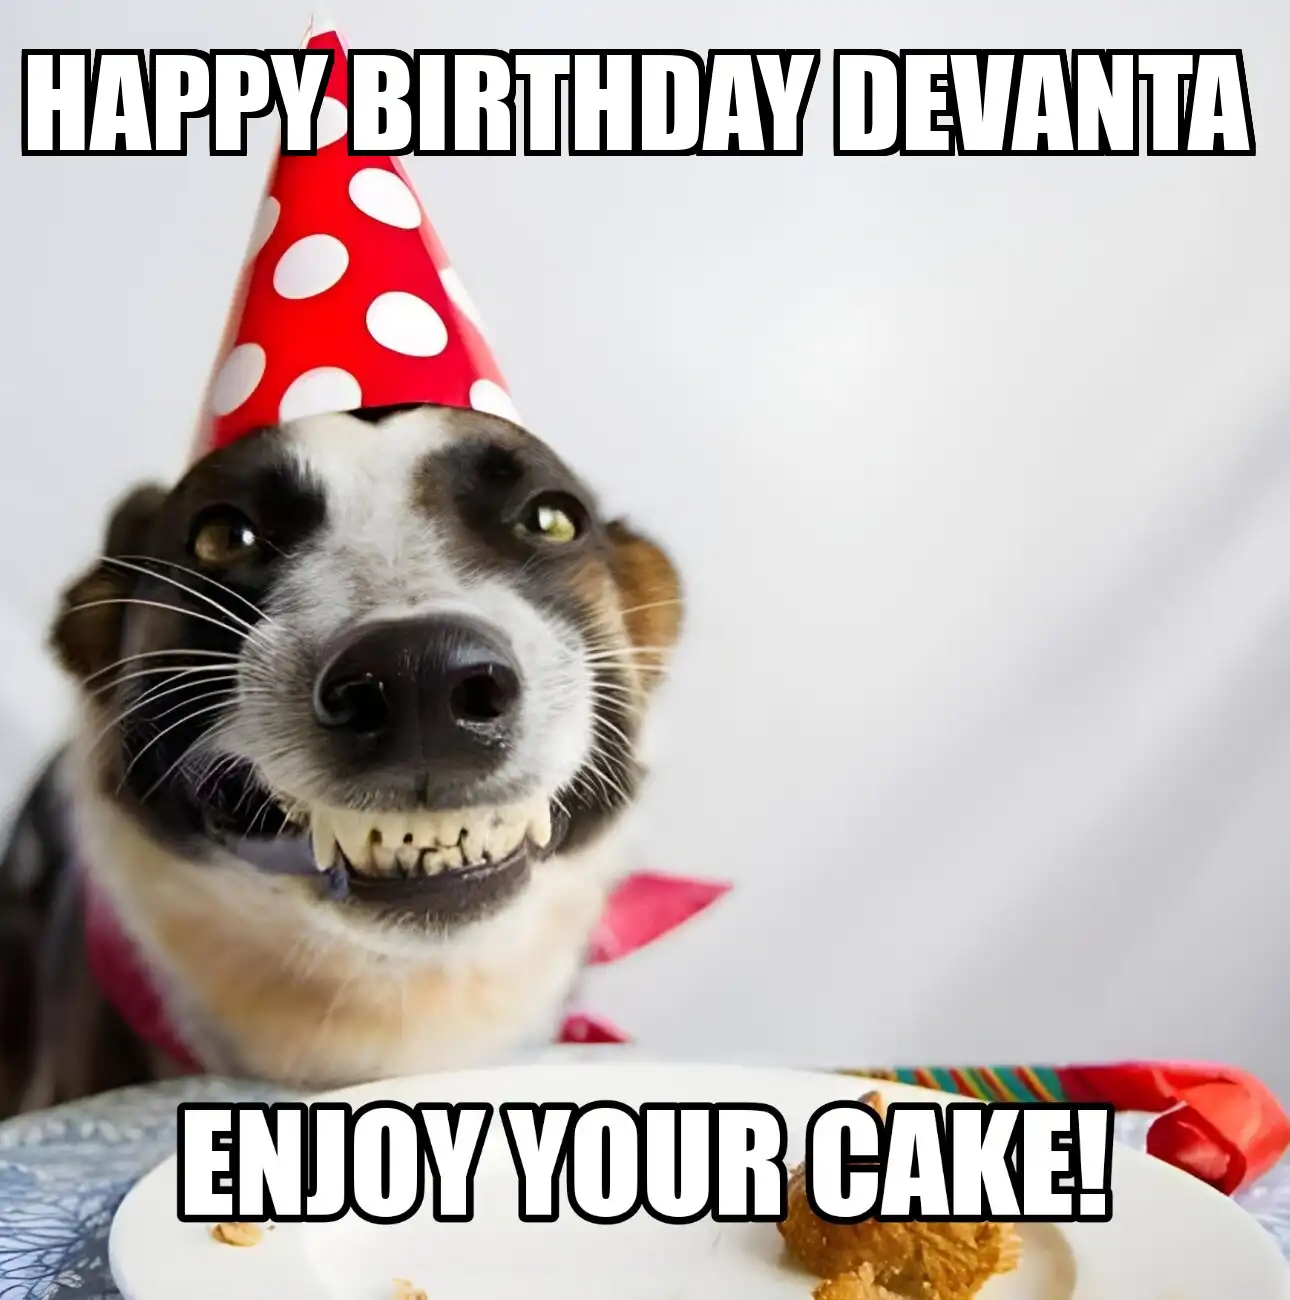 Happy Birthday Devanta Enjoy Your Cake Dog Meme